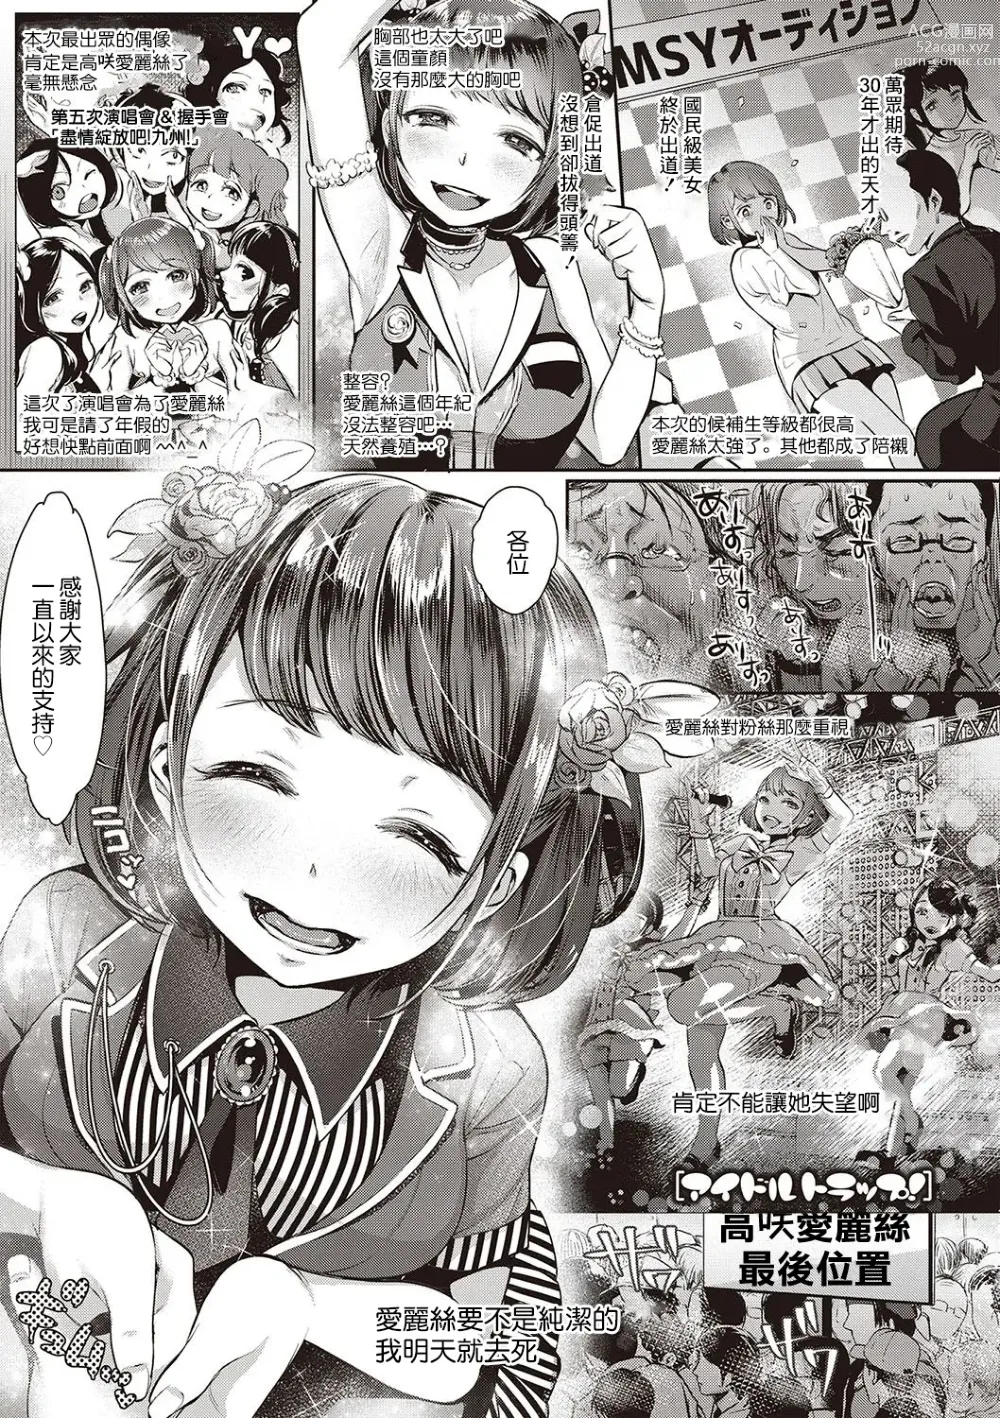 Page 1 of manga Idol Trap!